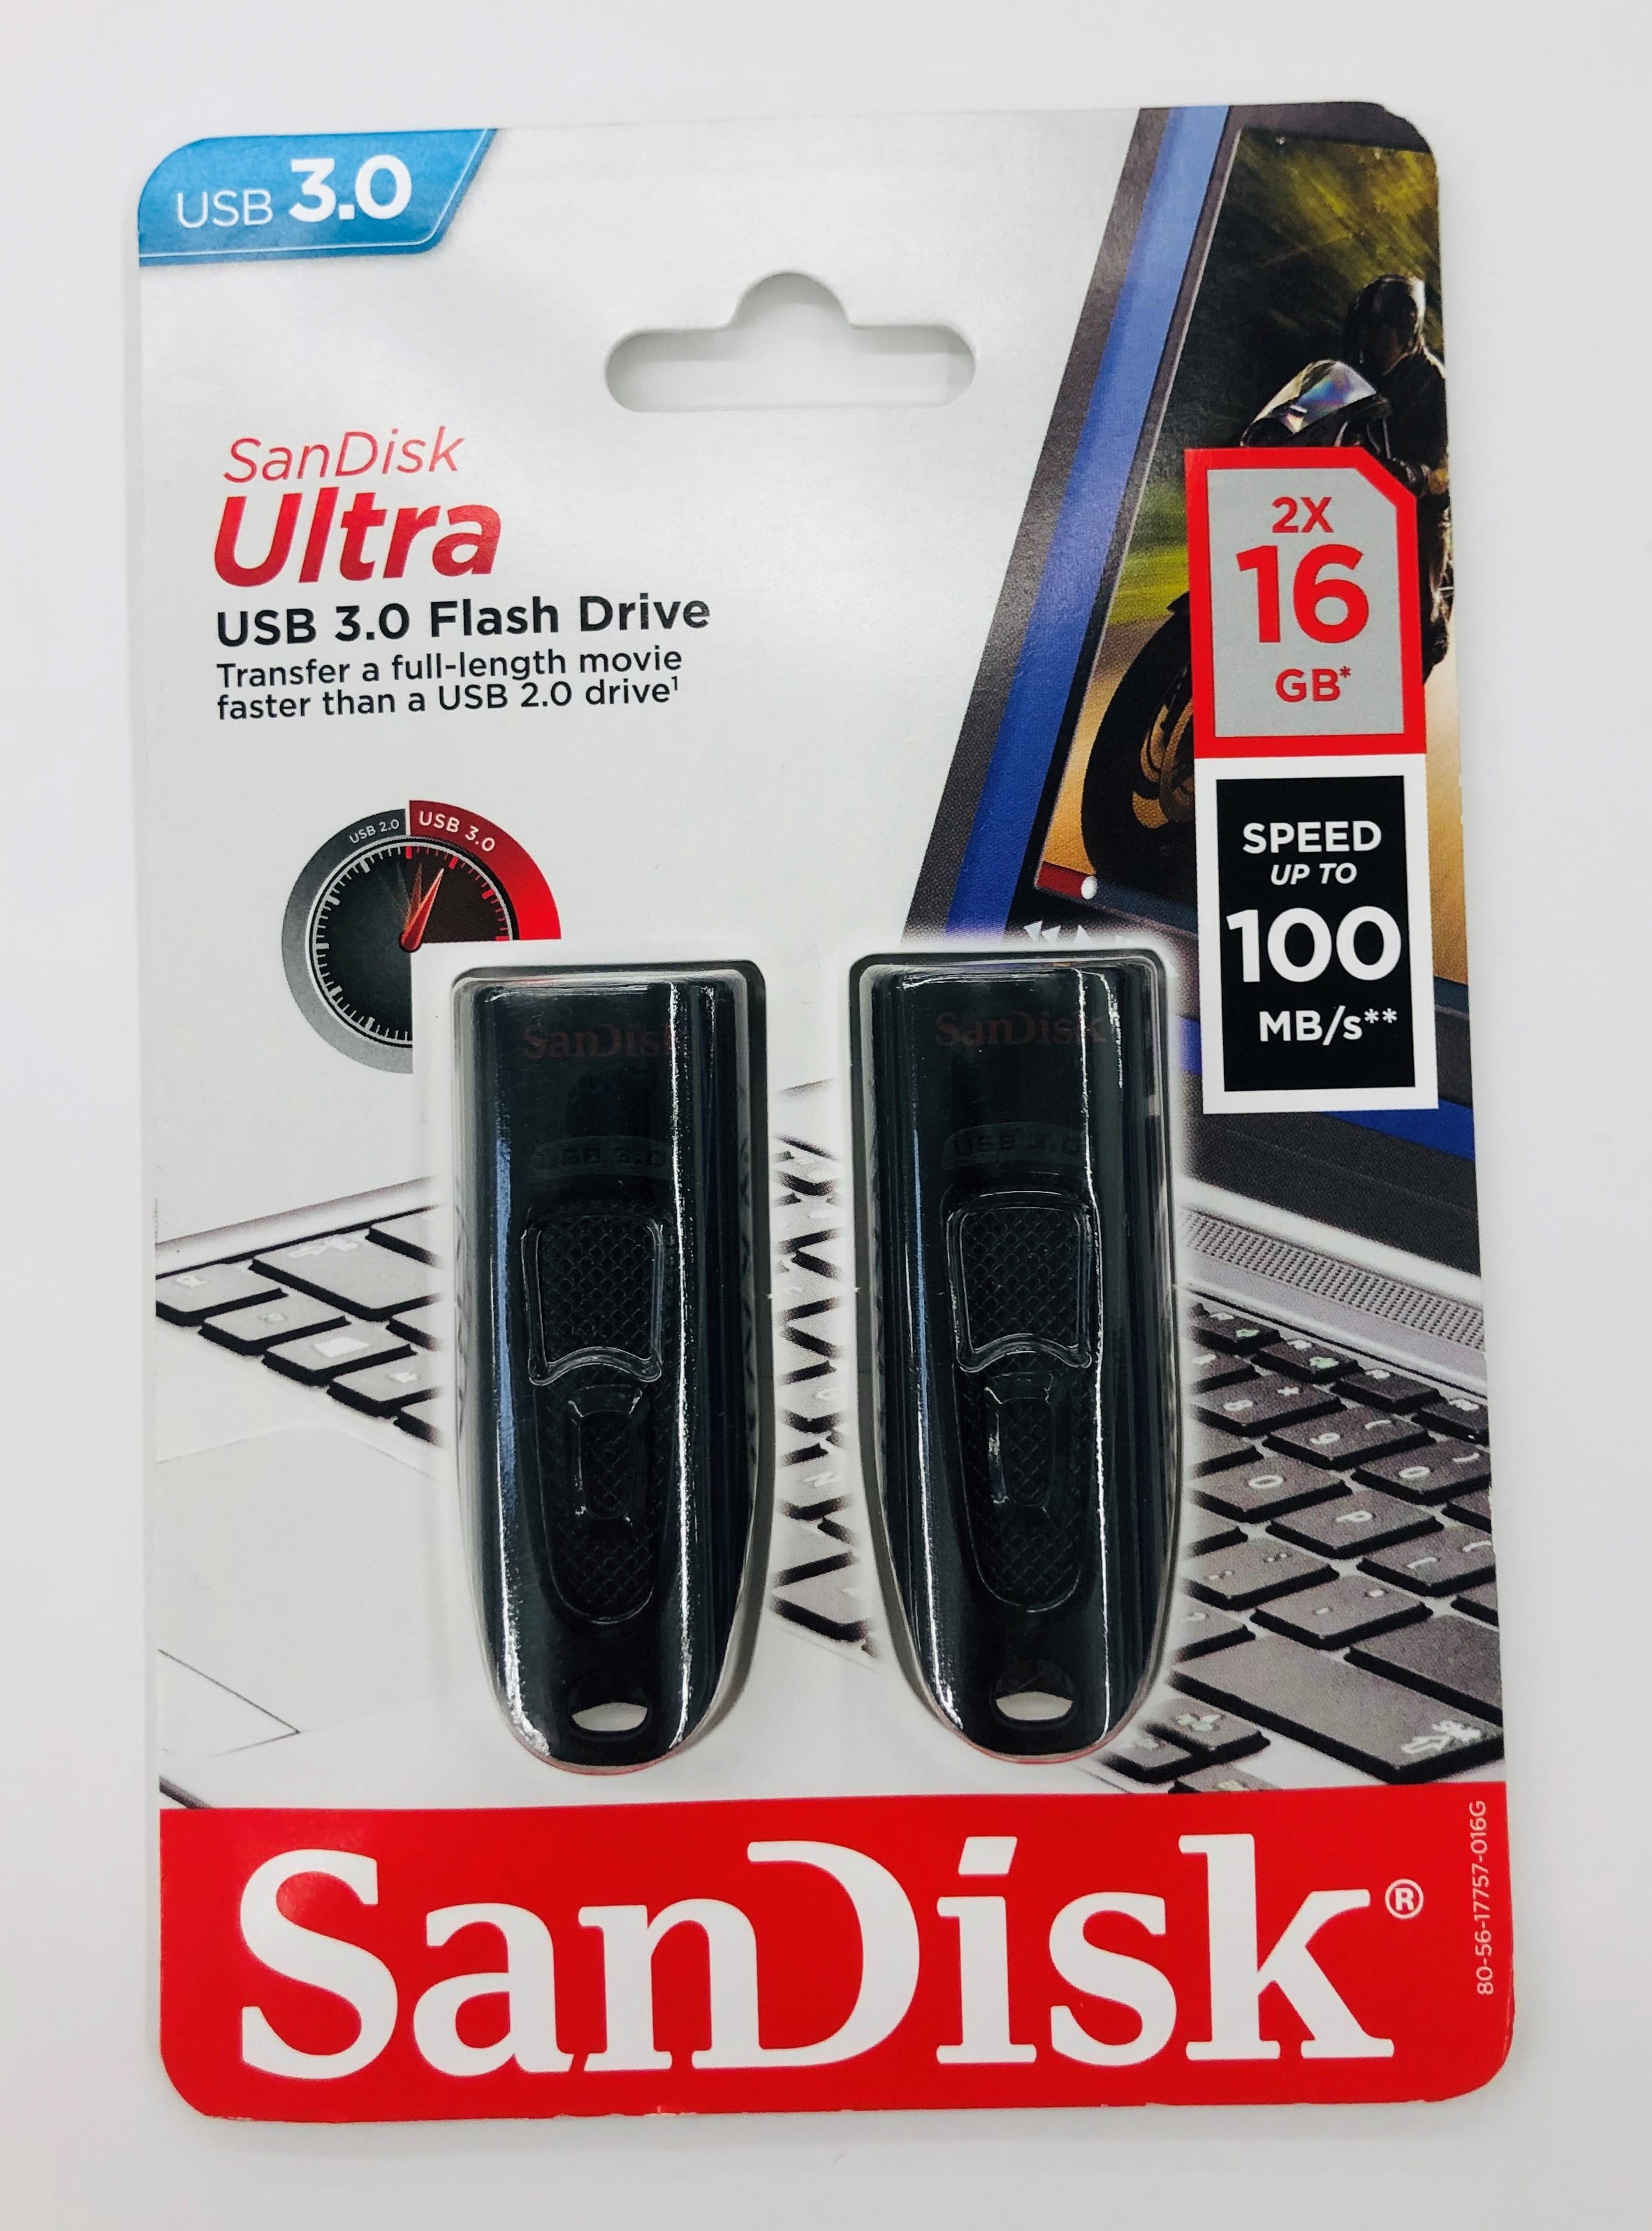 SanDisk 16GB 3.0 USB Flash Drive, 2 Pack  Walmart.com  Walmart.com